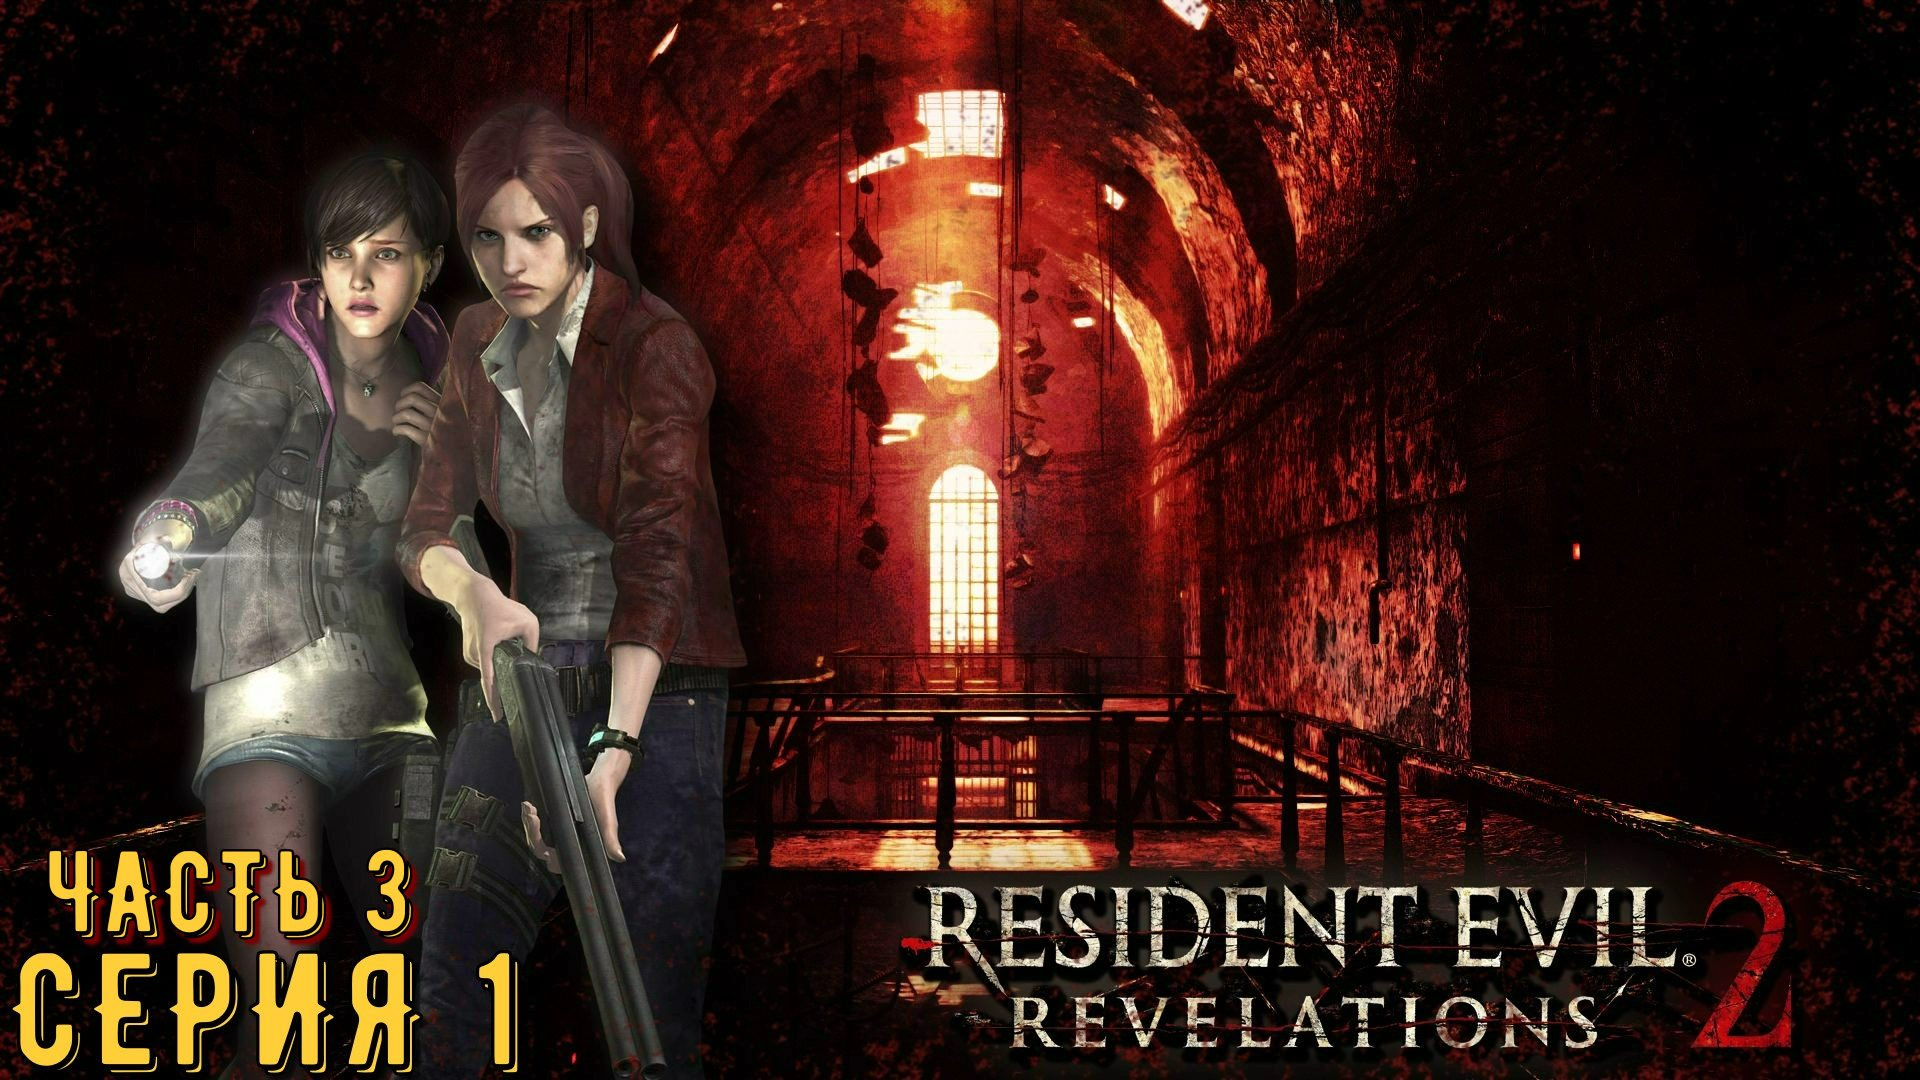 Resident Evil Revelations 2 / Biohazard Revelations 2 ► Серия 1 Часть 3 ◄ | Запись стрима